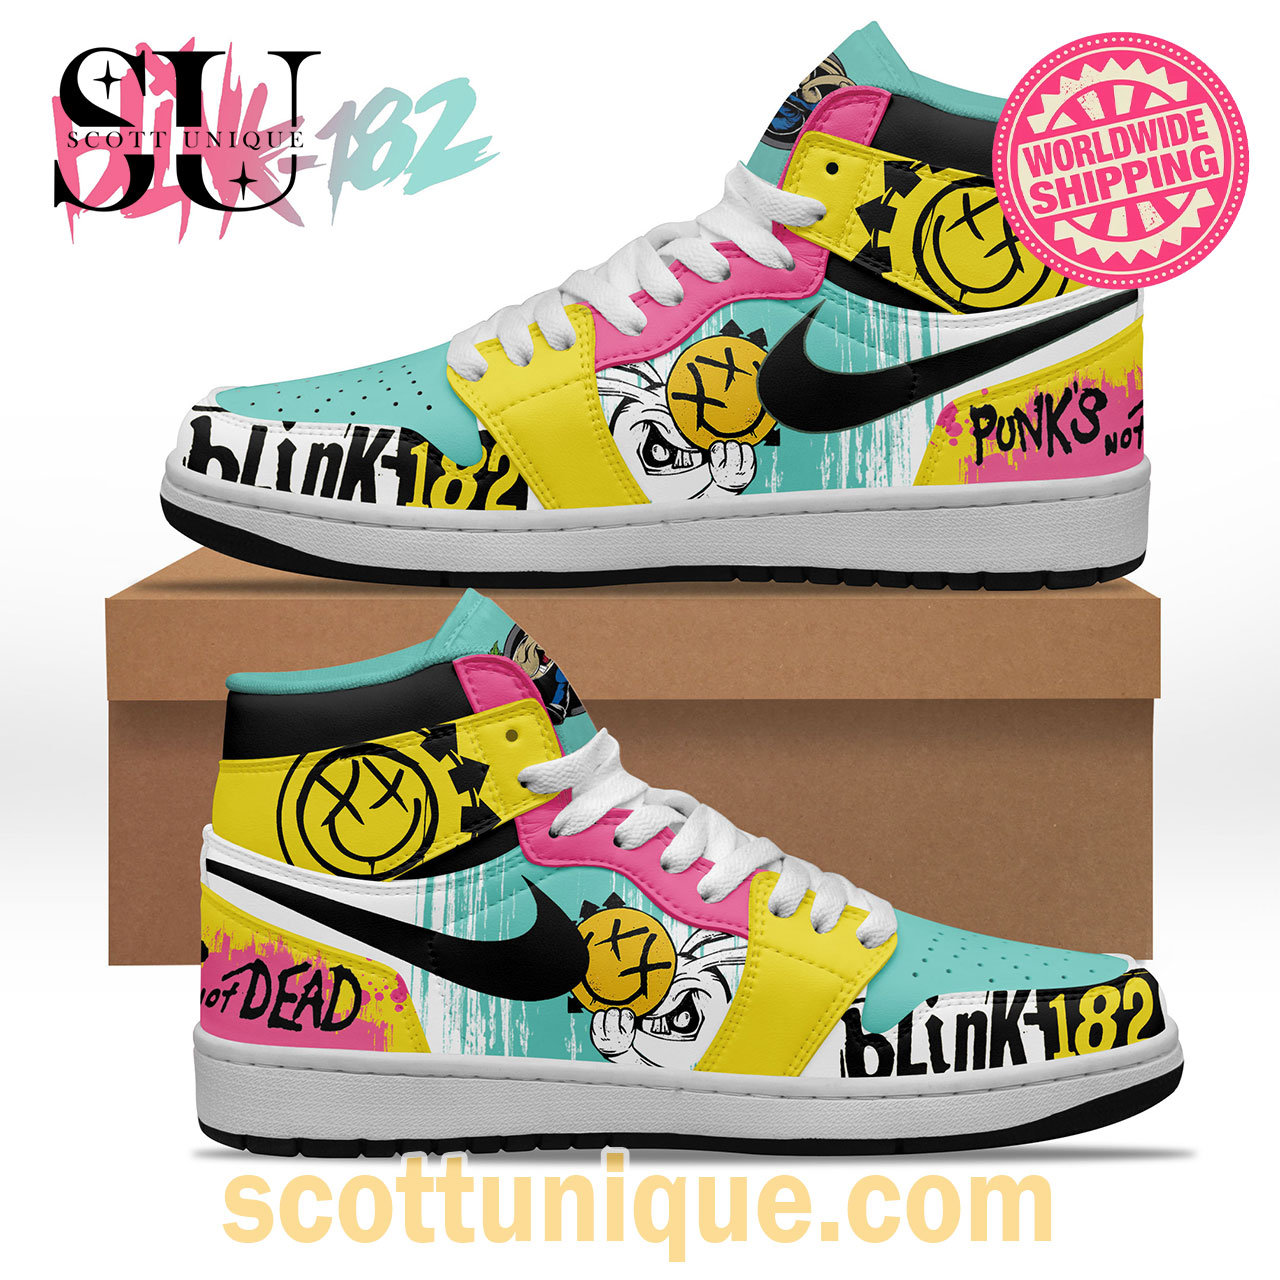 Premium Blink-182 Colorful Art Nike Air Jordan High Top Sneakers